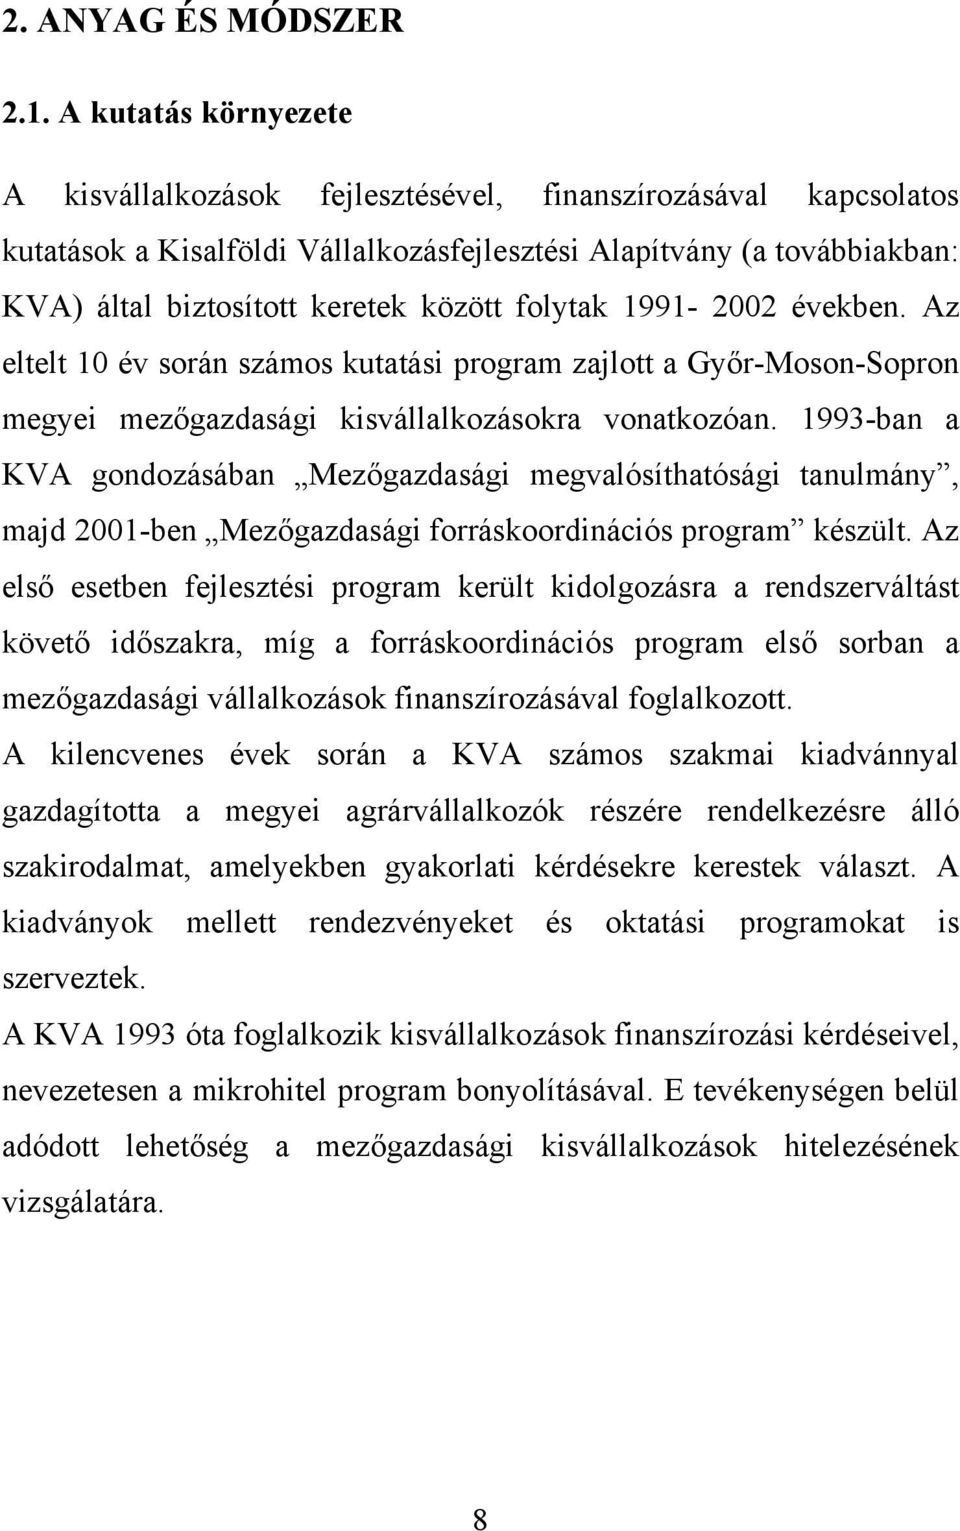 folytak 1991-2002 években. Az eltelt 10 év során számos kutatási program zajlott a Győr-Moson-Sopron megyei mezőgazdasági kisvállalkozásokra vonatkozóan.